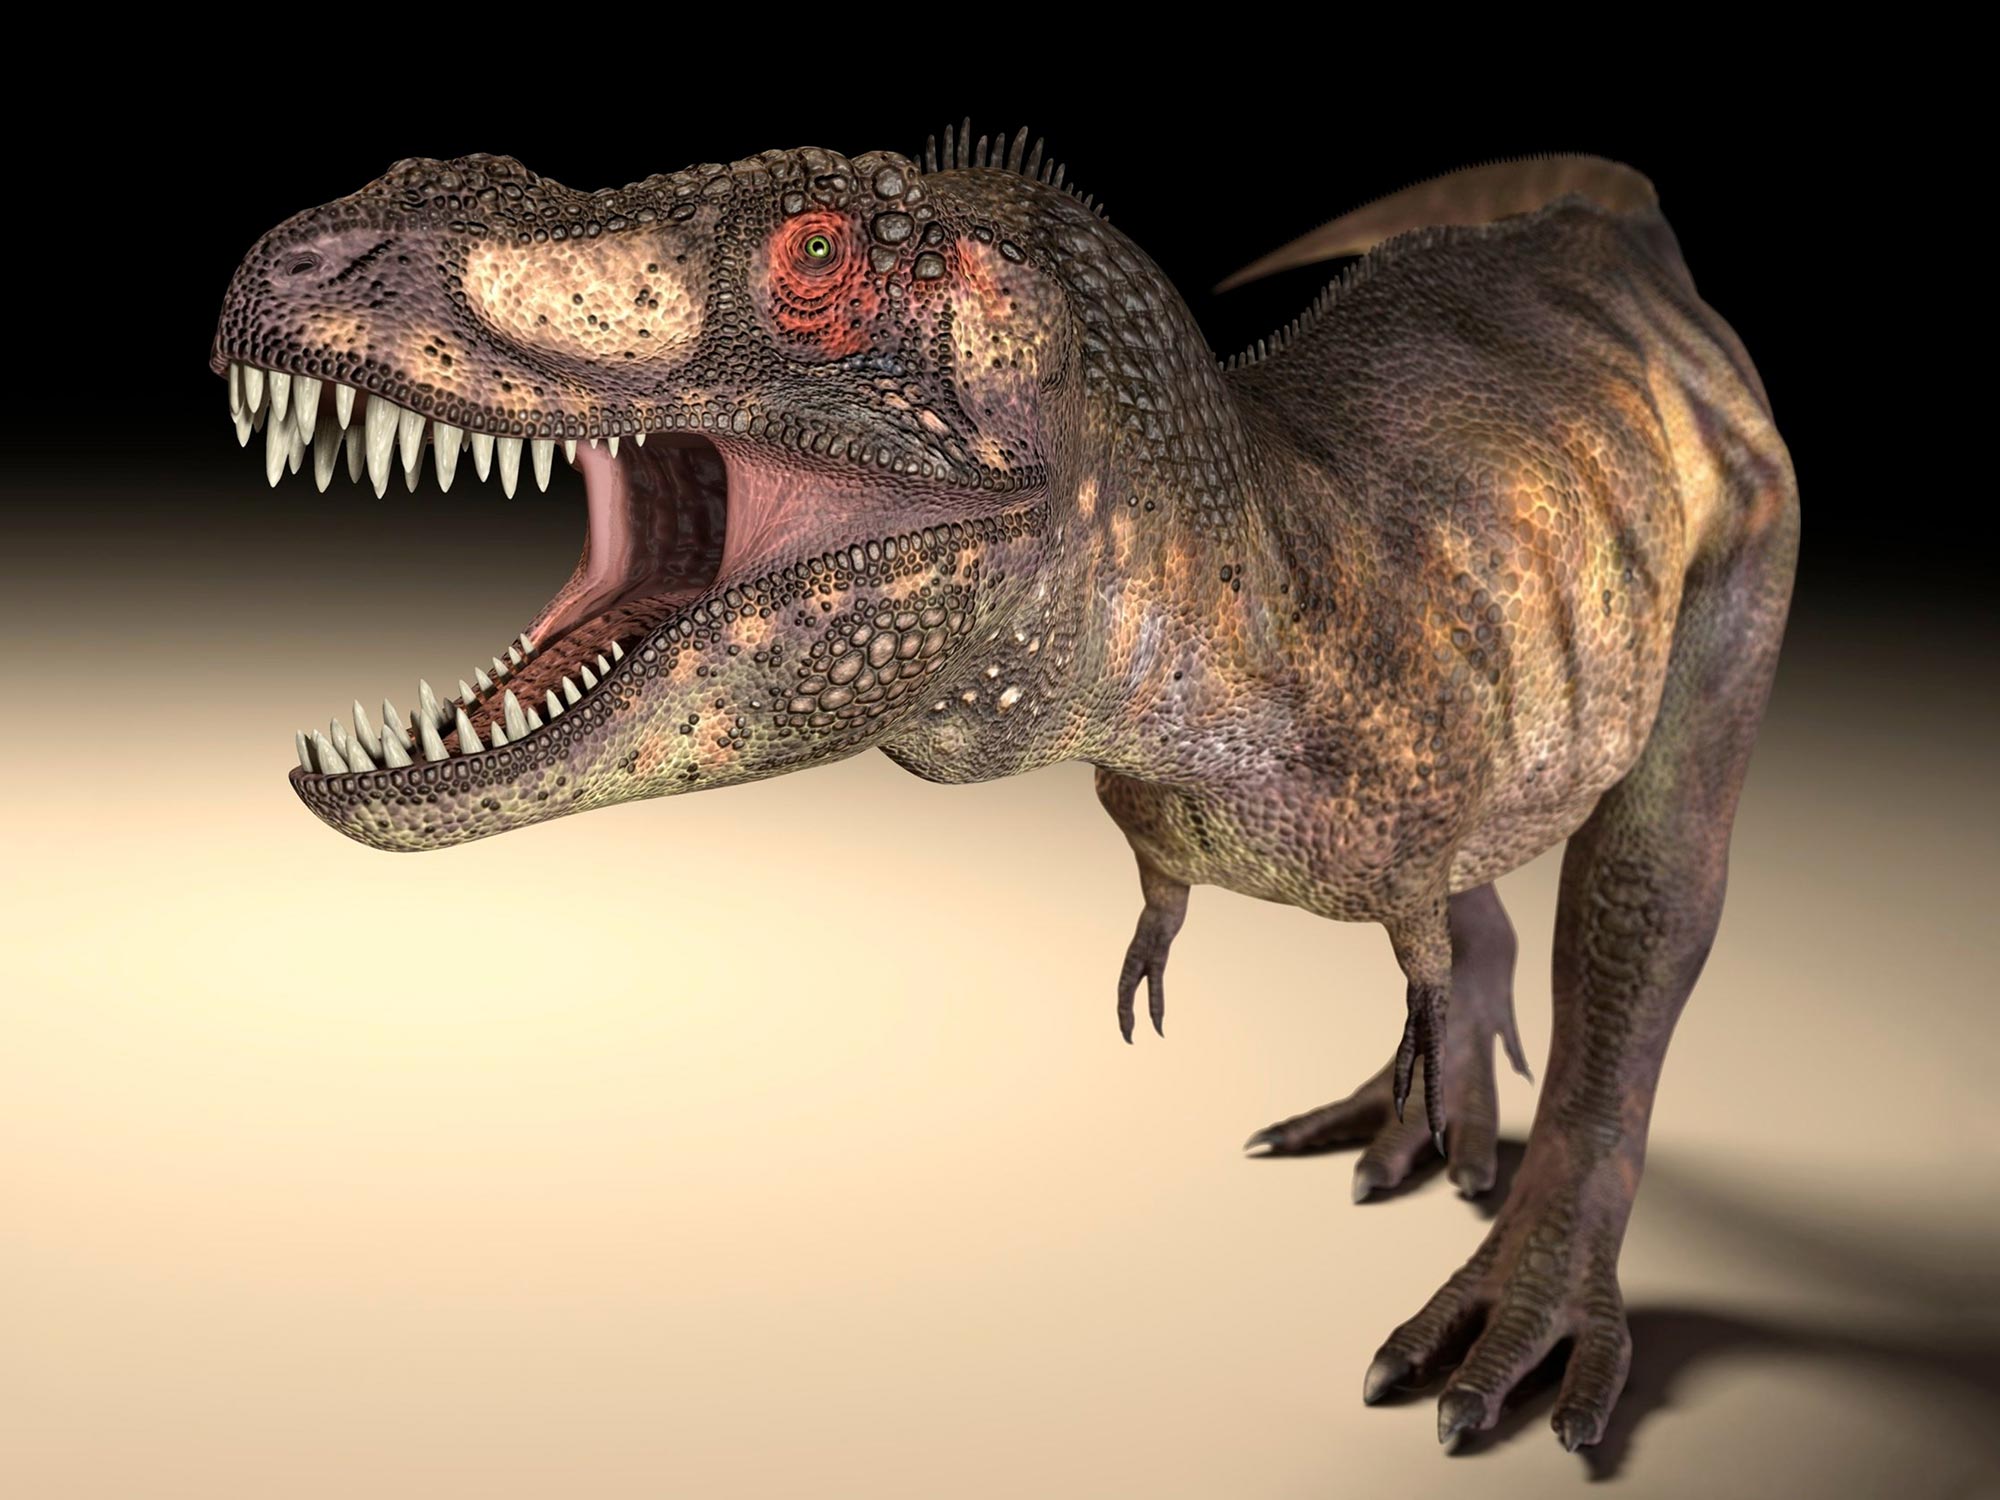 Große Raubsaurier wie der T. rex entwickelten unterschiedliche Augenhöhlenformen, um stärkere Bisse zu ermöglichen.